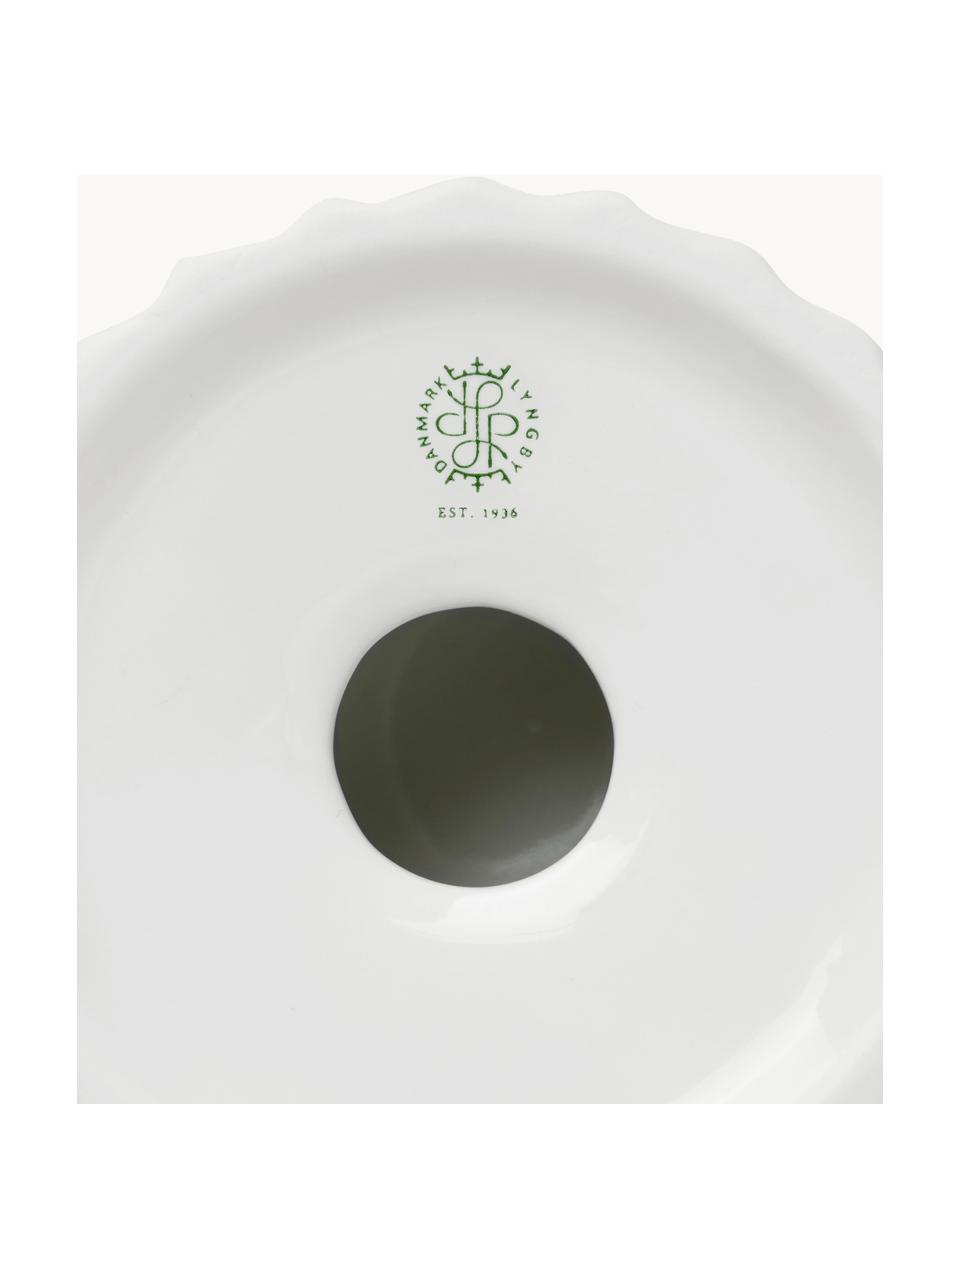 Porzellan-Teelichthalter Tura mit geriffelter Oberfläche, Porzellan, Weiß, Ø 8 x H 7 cm